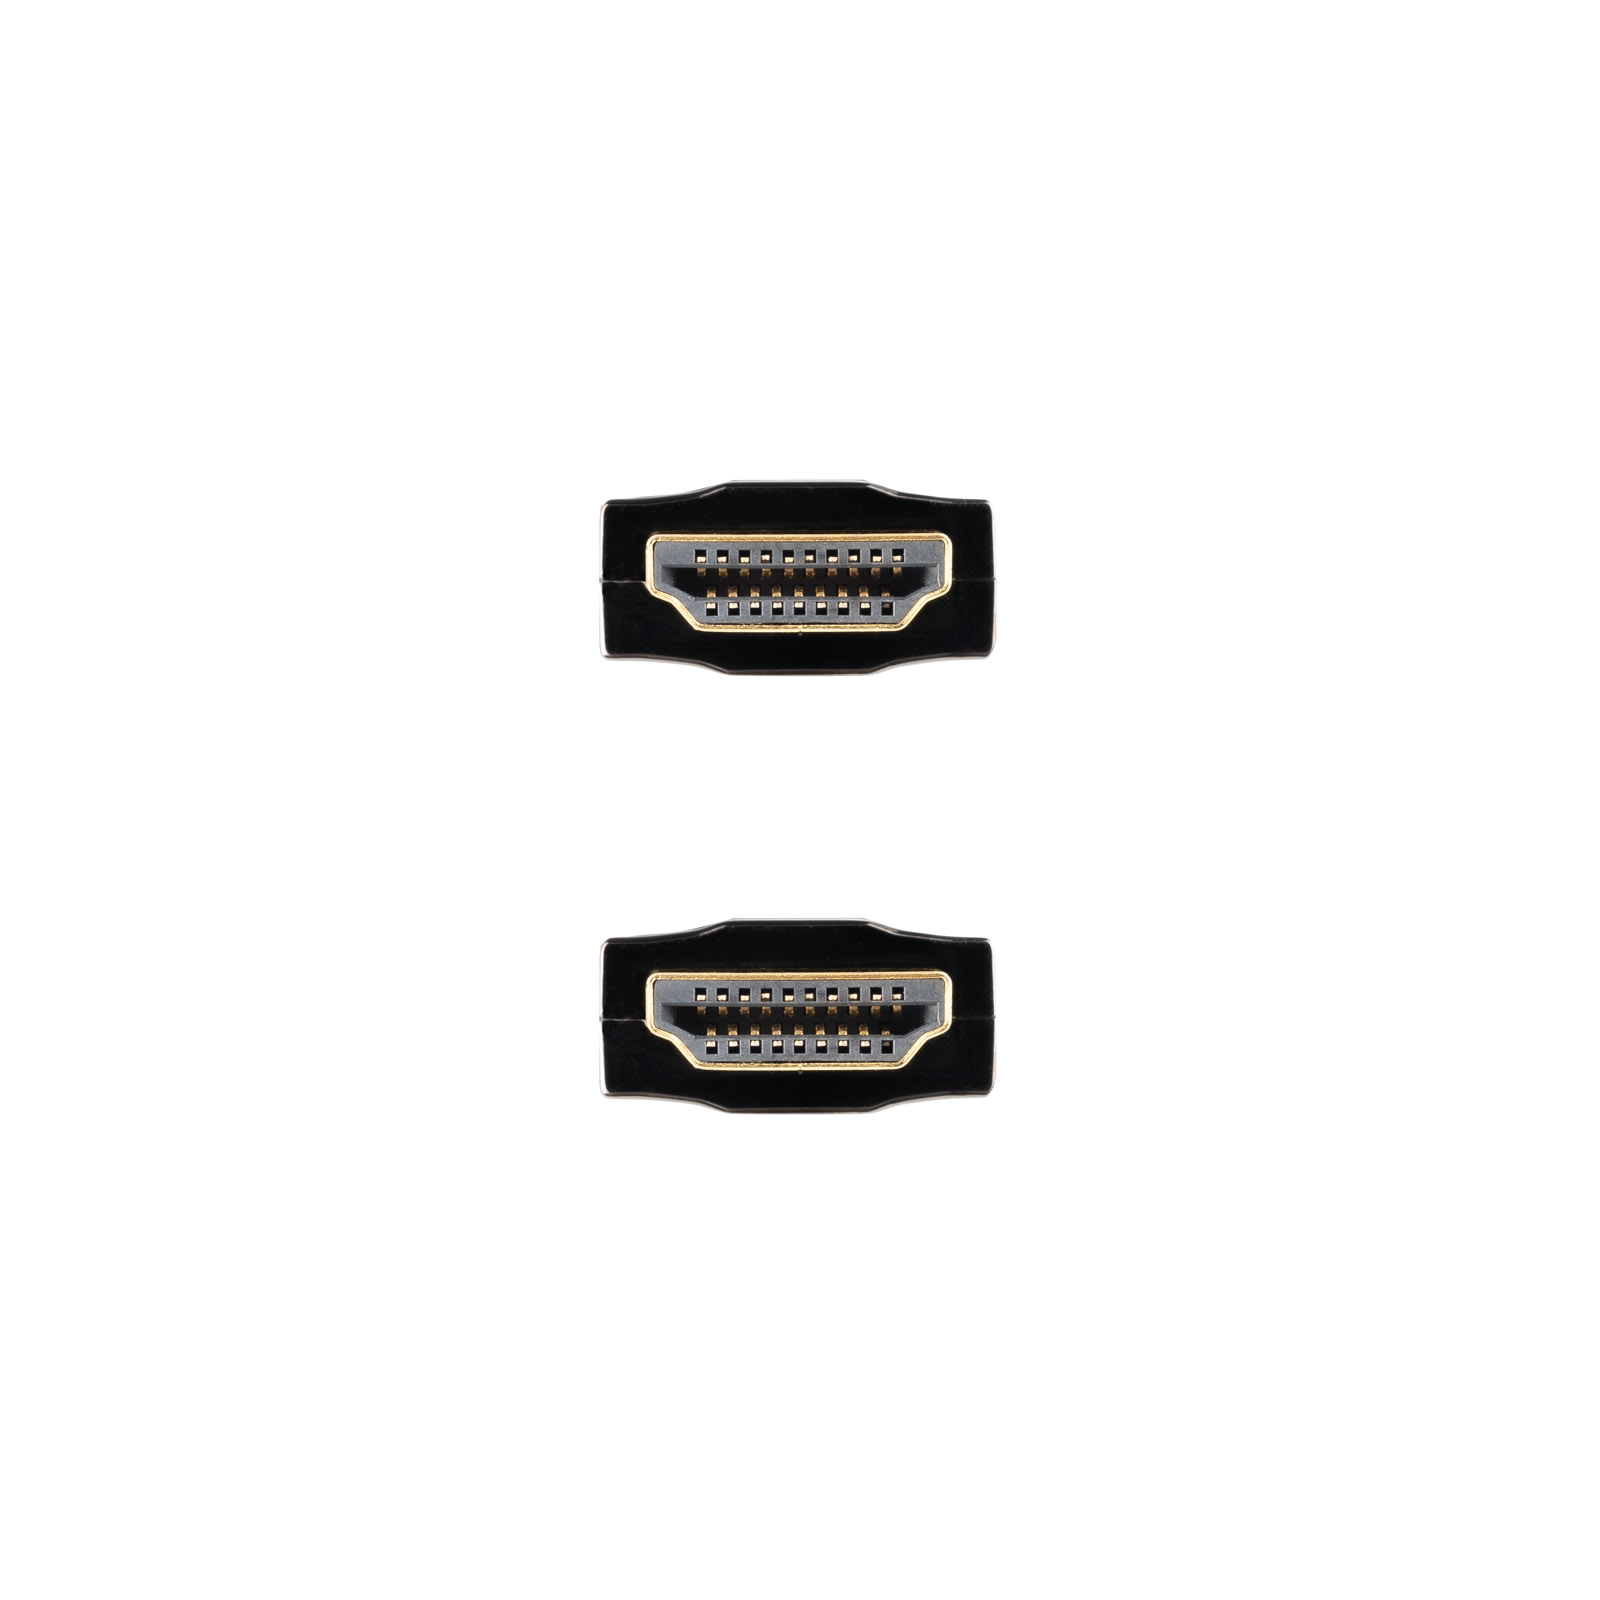 Nanocable Câble HDMI v2.0 Mâle vers HDMI v2.0 Mâle 15m - 4K@60Hz 18Gbps - Couleur Noir